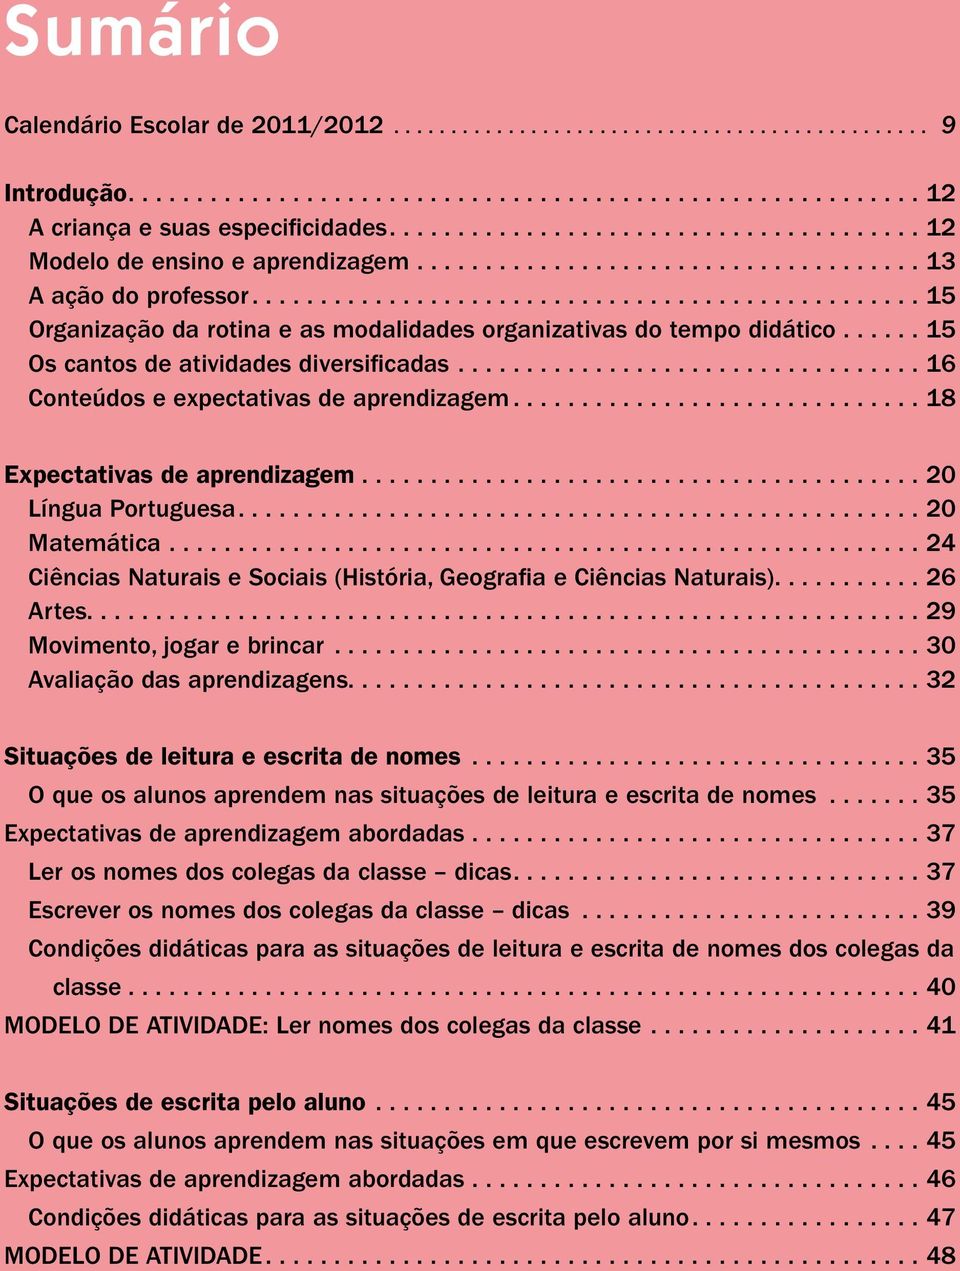 ...18 Expectativas de aprendizagem....20 Língua Portuguesa....20 Matemática....24 Ciências Naturais e Sociais (História, Geografia e Ciências Naturais)........... 26 Artes.